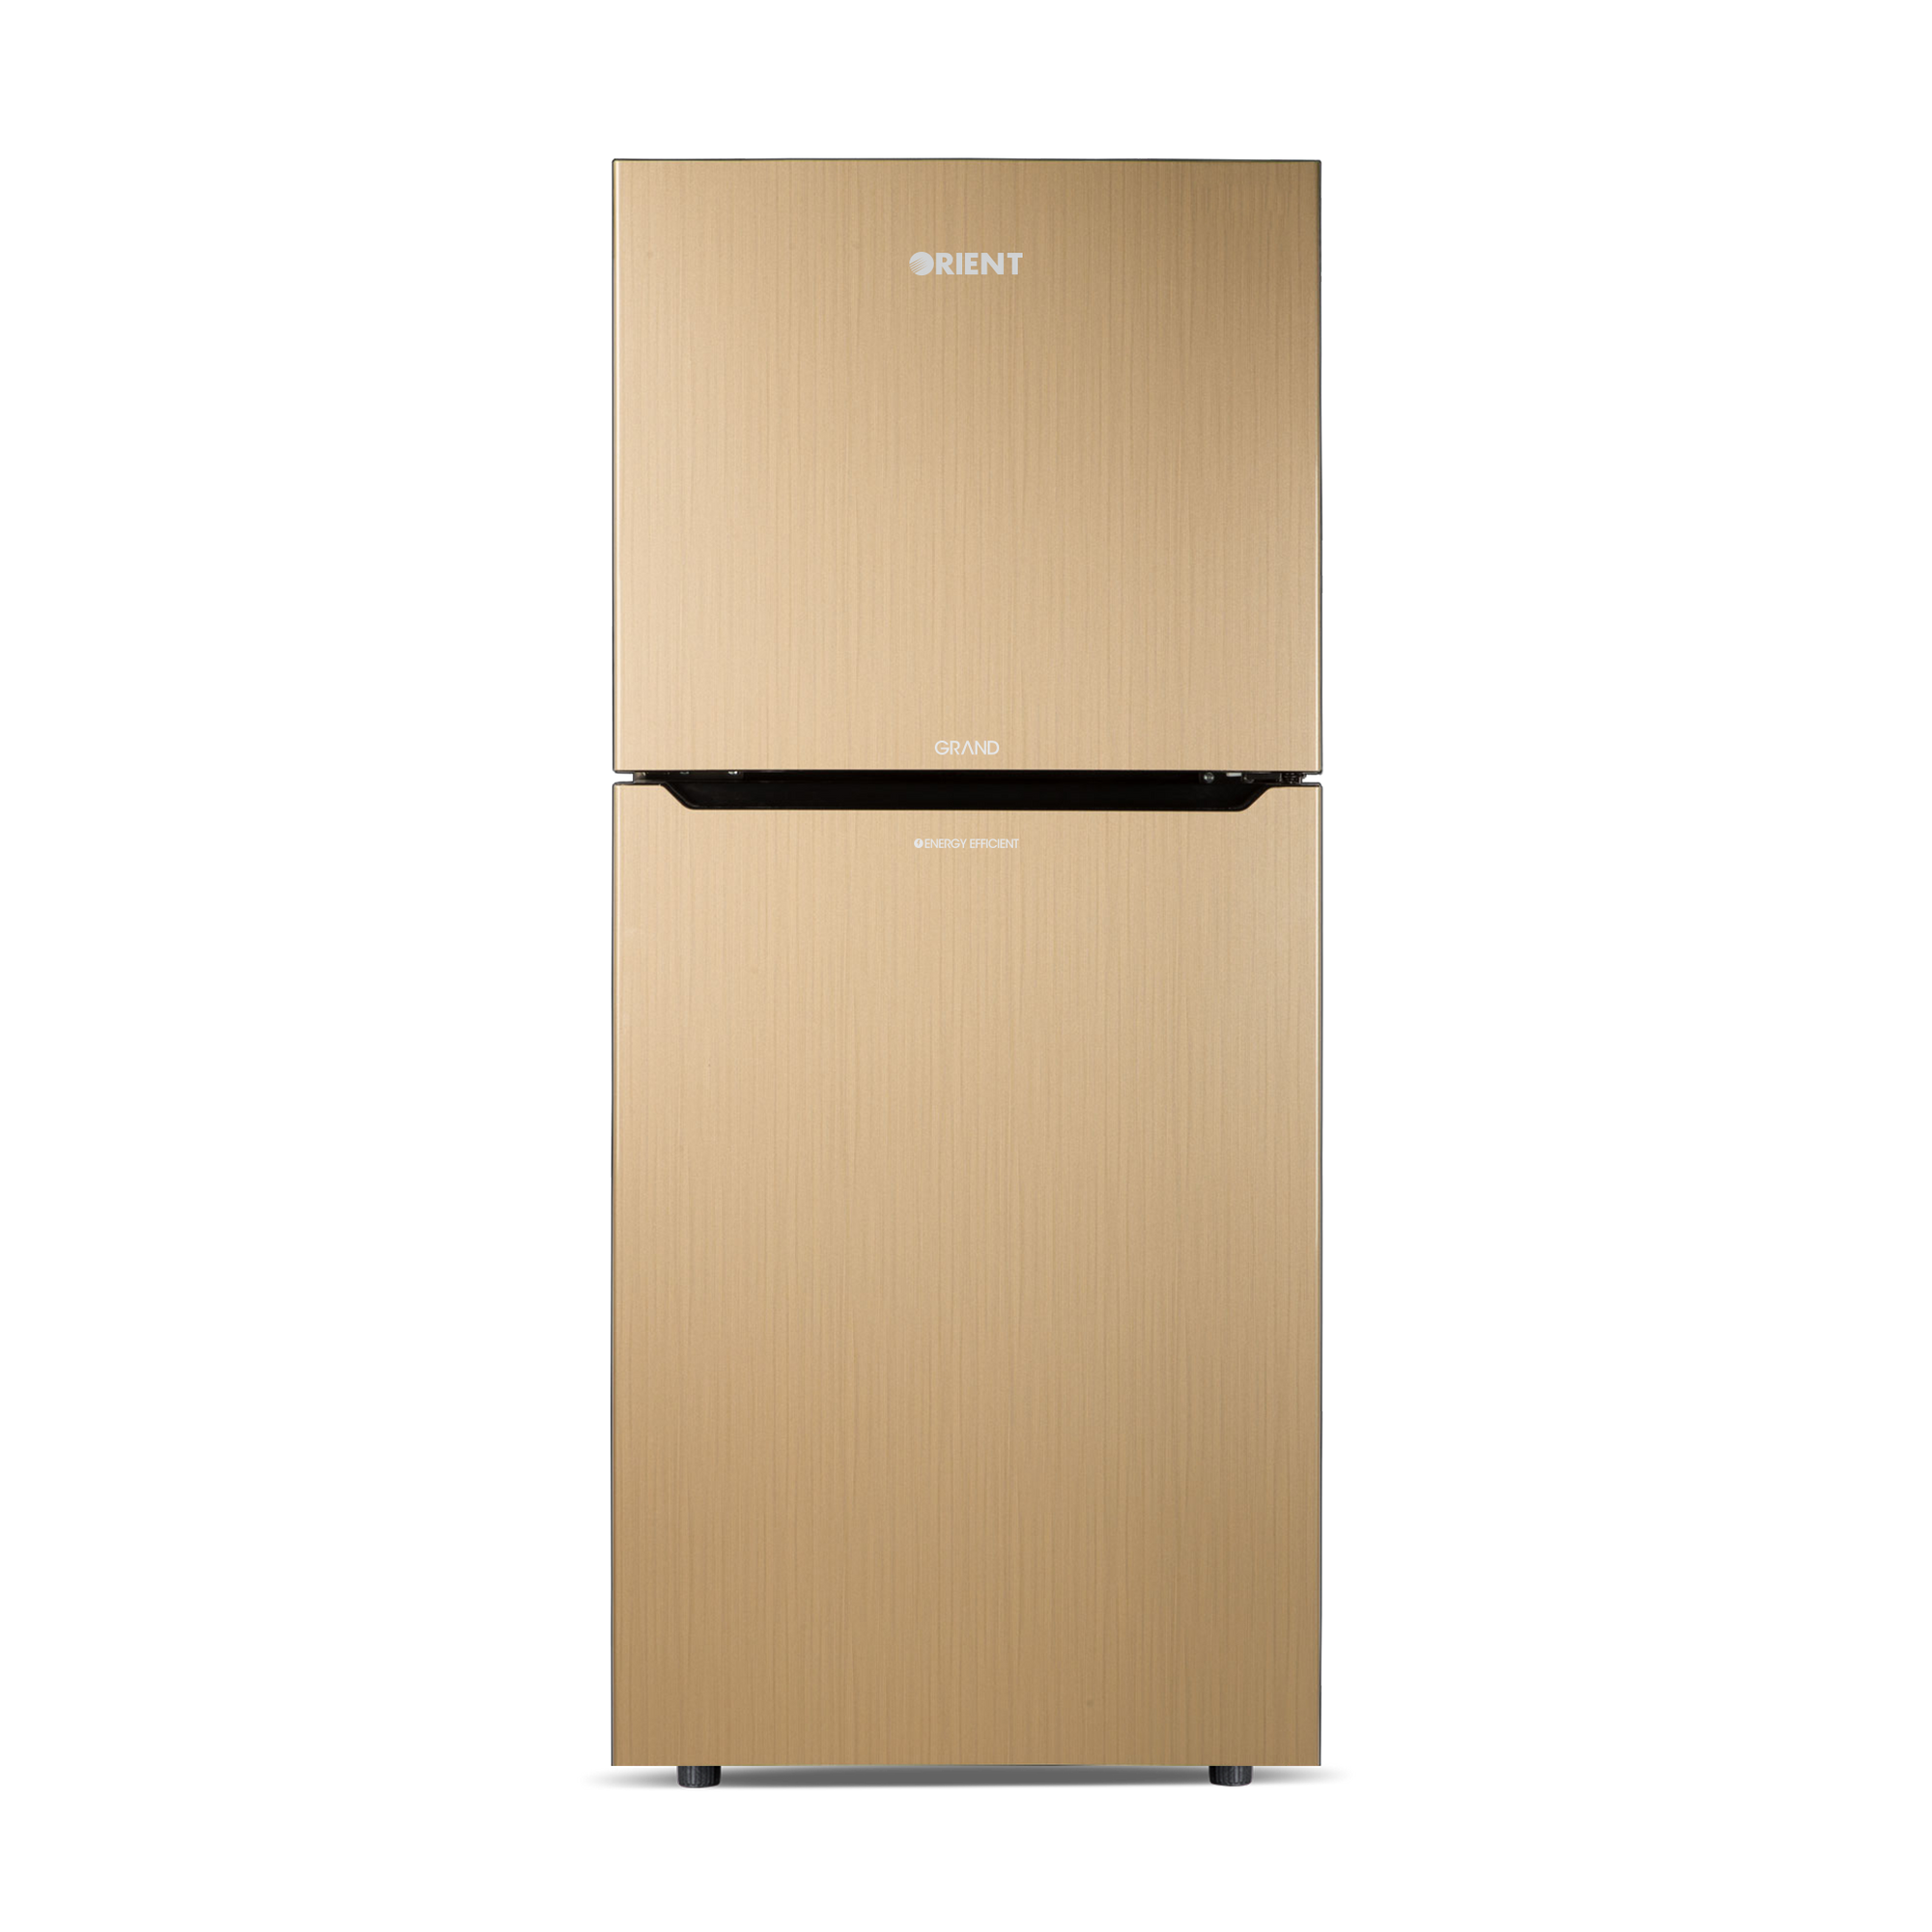 Orient Refrigerator Double Door - 415H Grand VCM - Jumbo Freezer